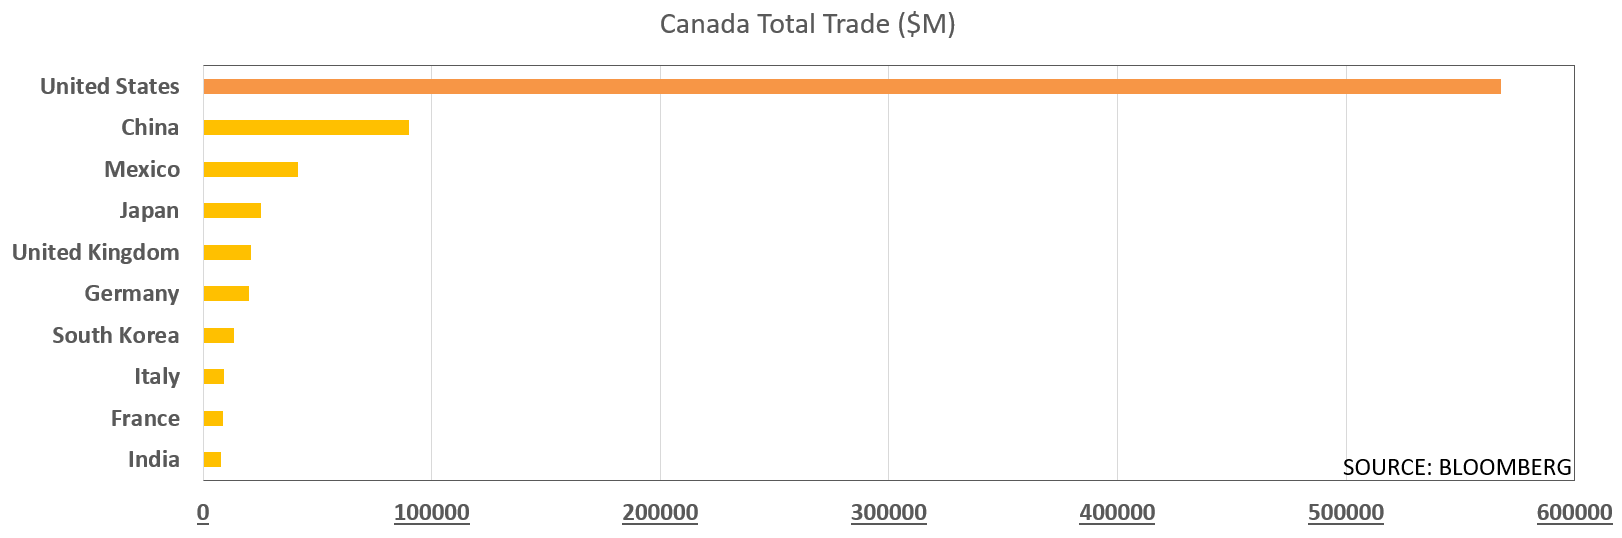 صادرات کانادا به آمریکا